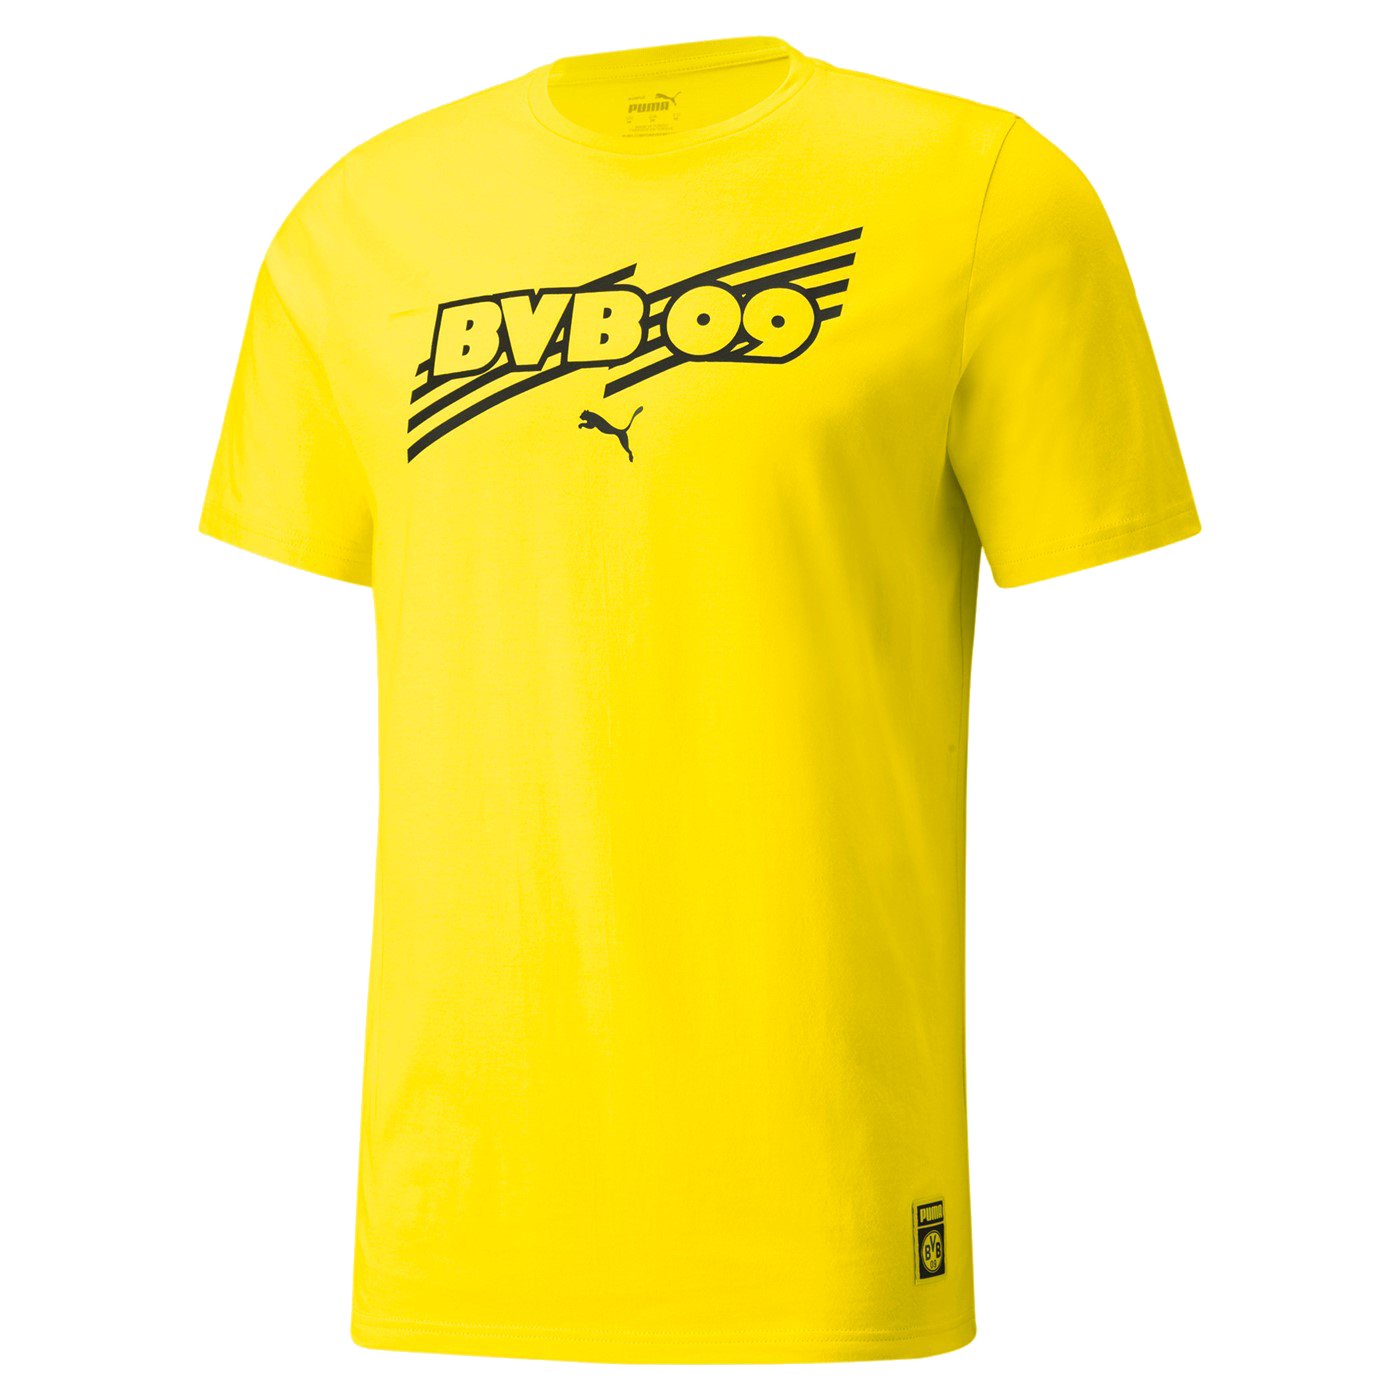 Puma Borussia Dortmund FtblCore žlutá/černá UK XL Pánské